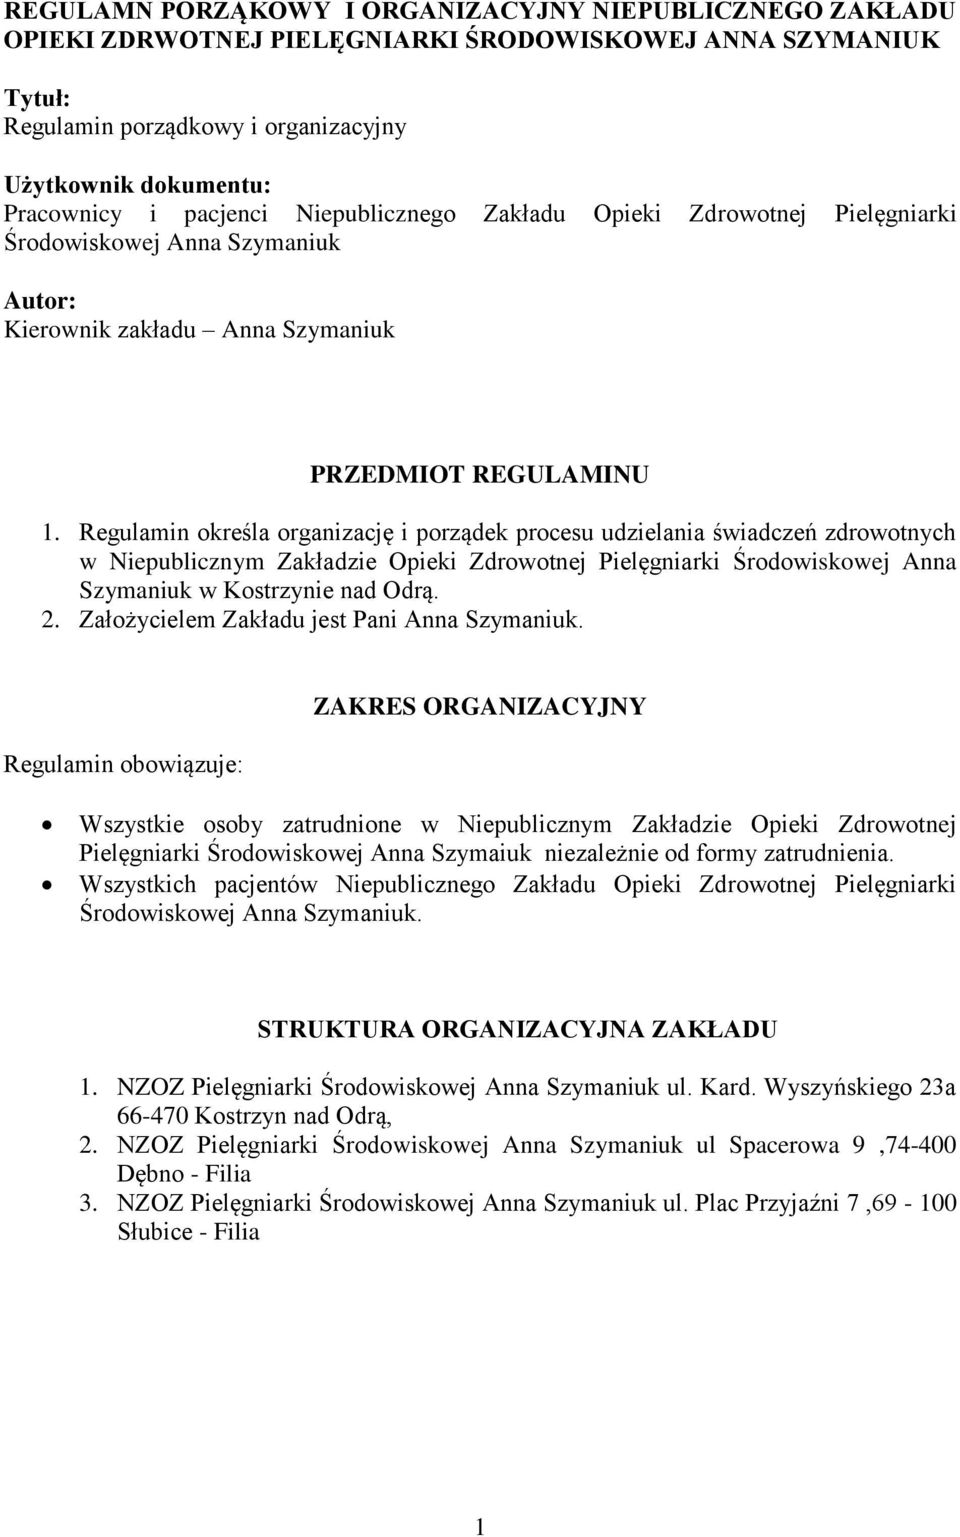 Regulamin określa organizację i porządek procesu udzielania świadczeń zdrowotnych w Niepublicznym Zakładzie Opieki Zdrowotnej Pielęgniarki Środowiskowej Anna Szymaniuk w Kostrzynie nad Odrą. 2.